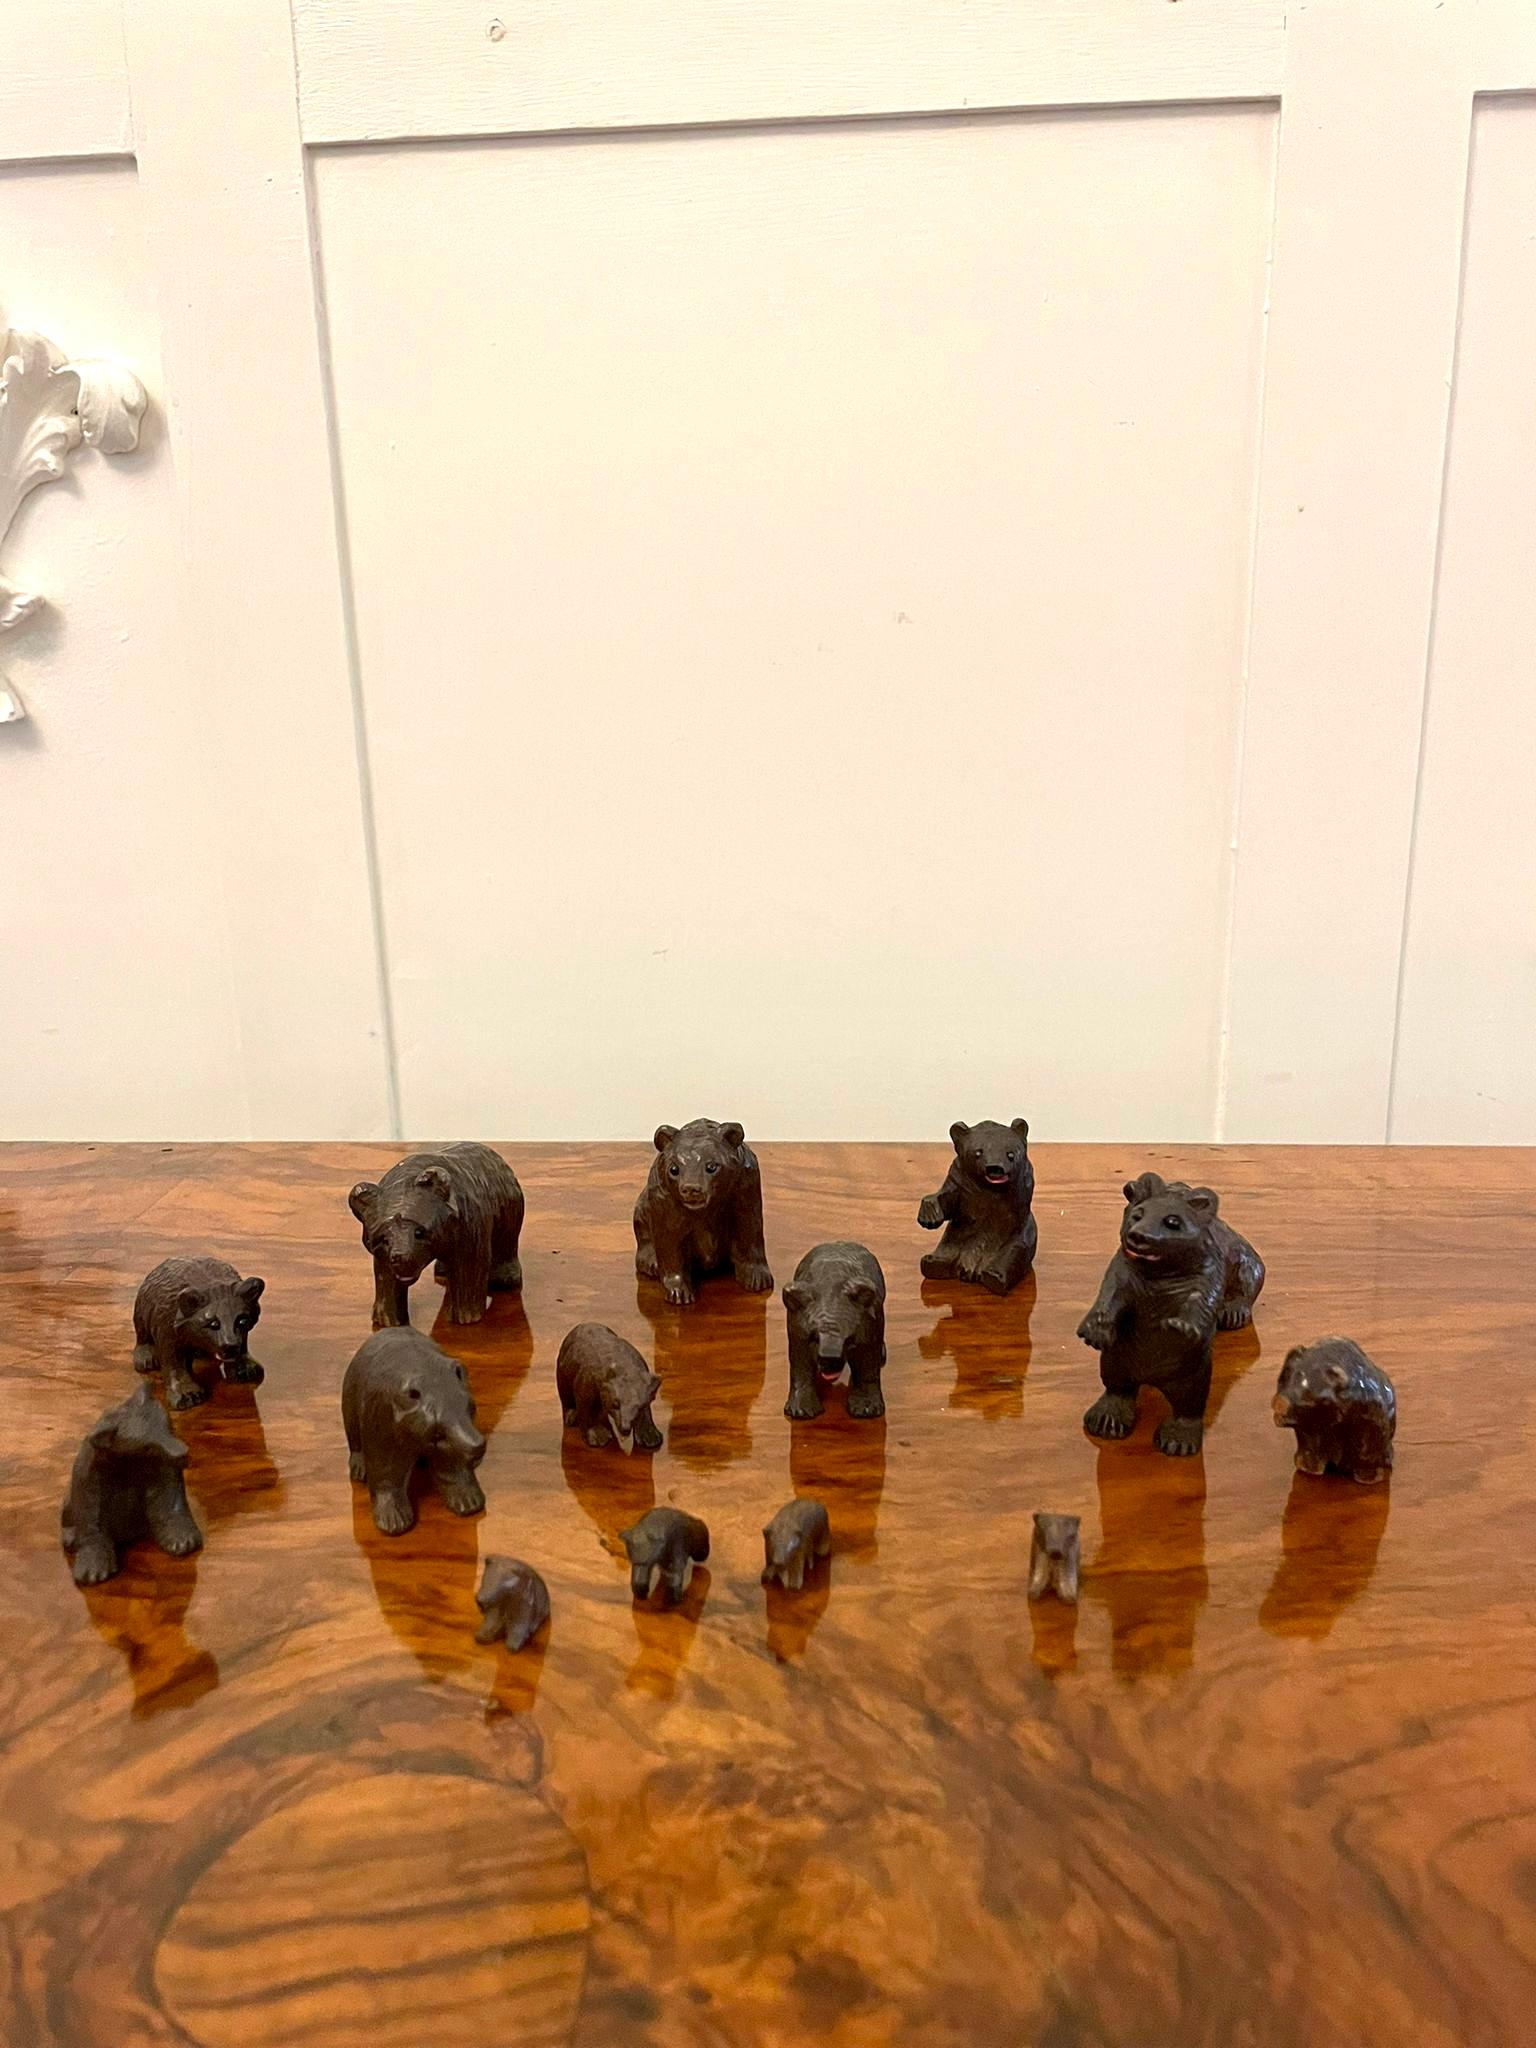 Antiker Satz von fünfzehn geschnitzten Miniatur-Schwarzwaldbären aus dem 19. Jahrhundert, einige stehend, einige sitzend, einige mit originalen Glasaugen und in fabelhaftem Originalzustand.
 
Eine Collection'S mit Charme und prächtiger